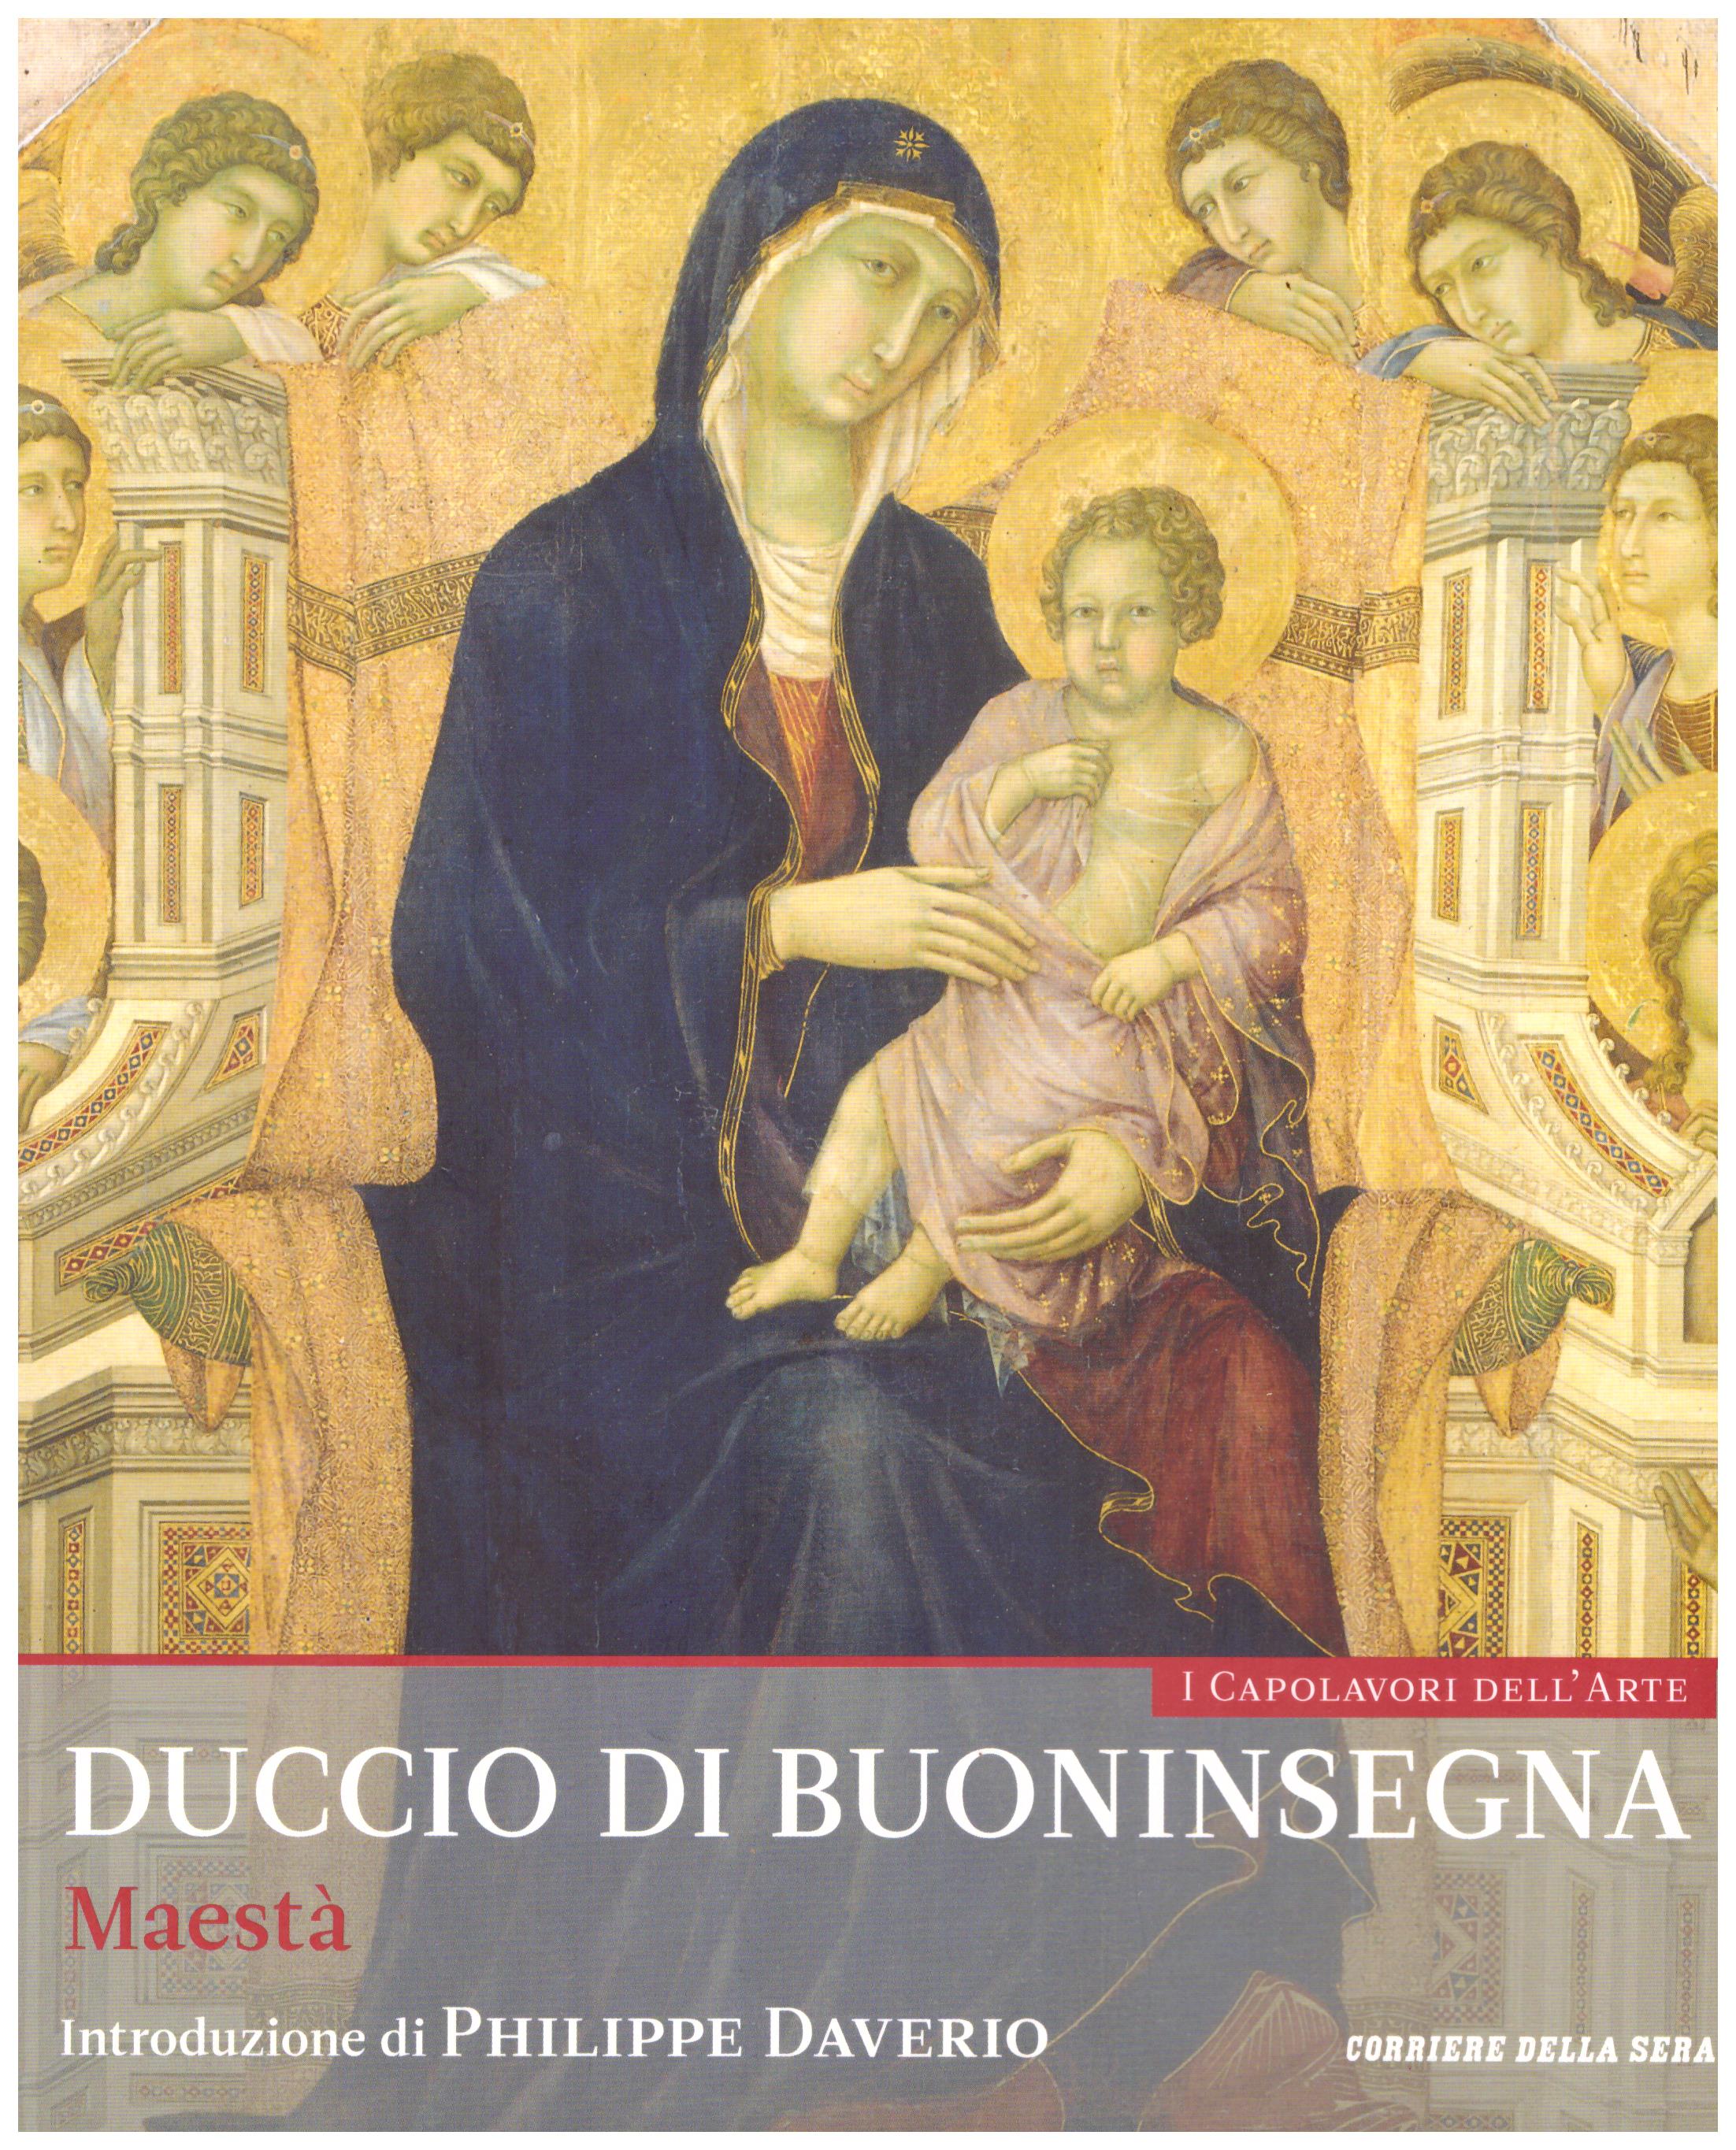 Titolo: I capolavori dell'arte, Duccio di Buoninsegna n.26  Autore : AA.VV.   Editore: education,it/corriere della sera, 2015